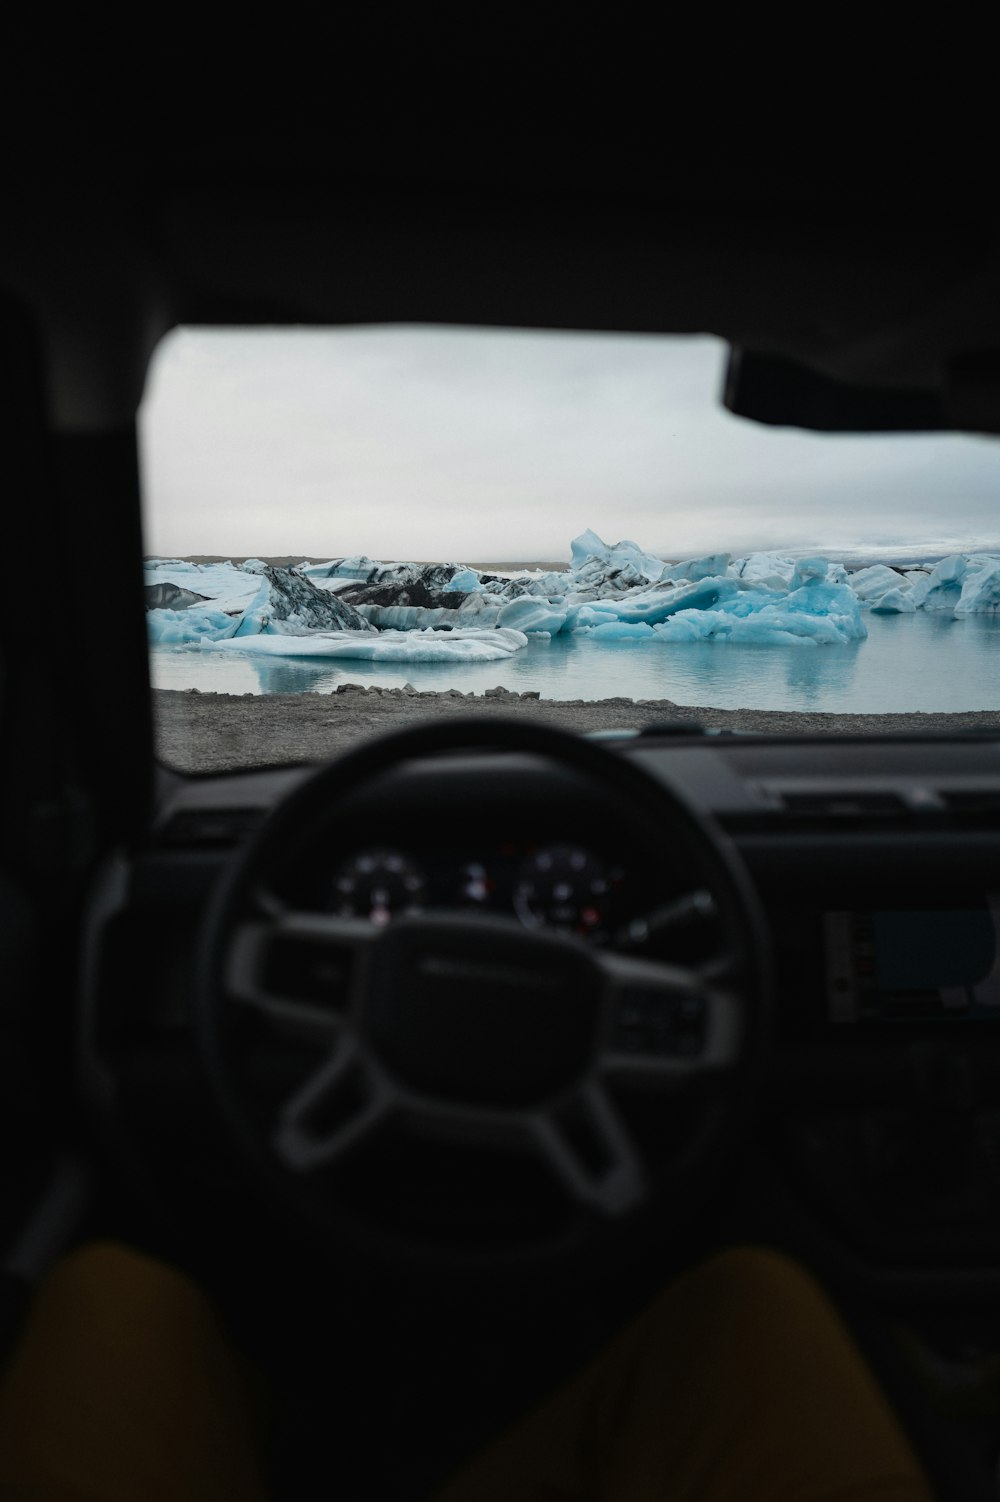 Una vista de un glaciar desde el interior de un coche